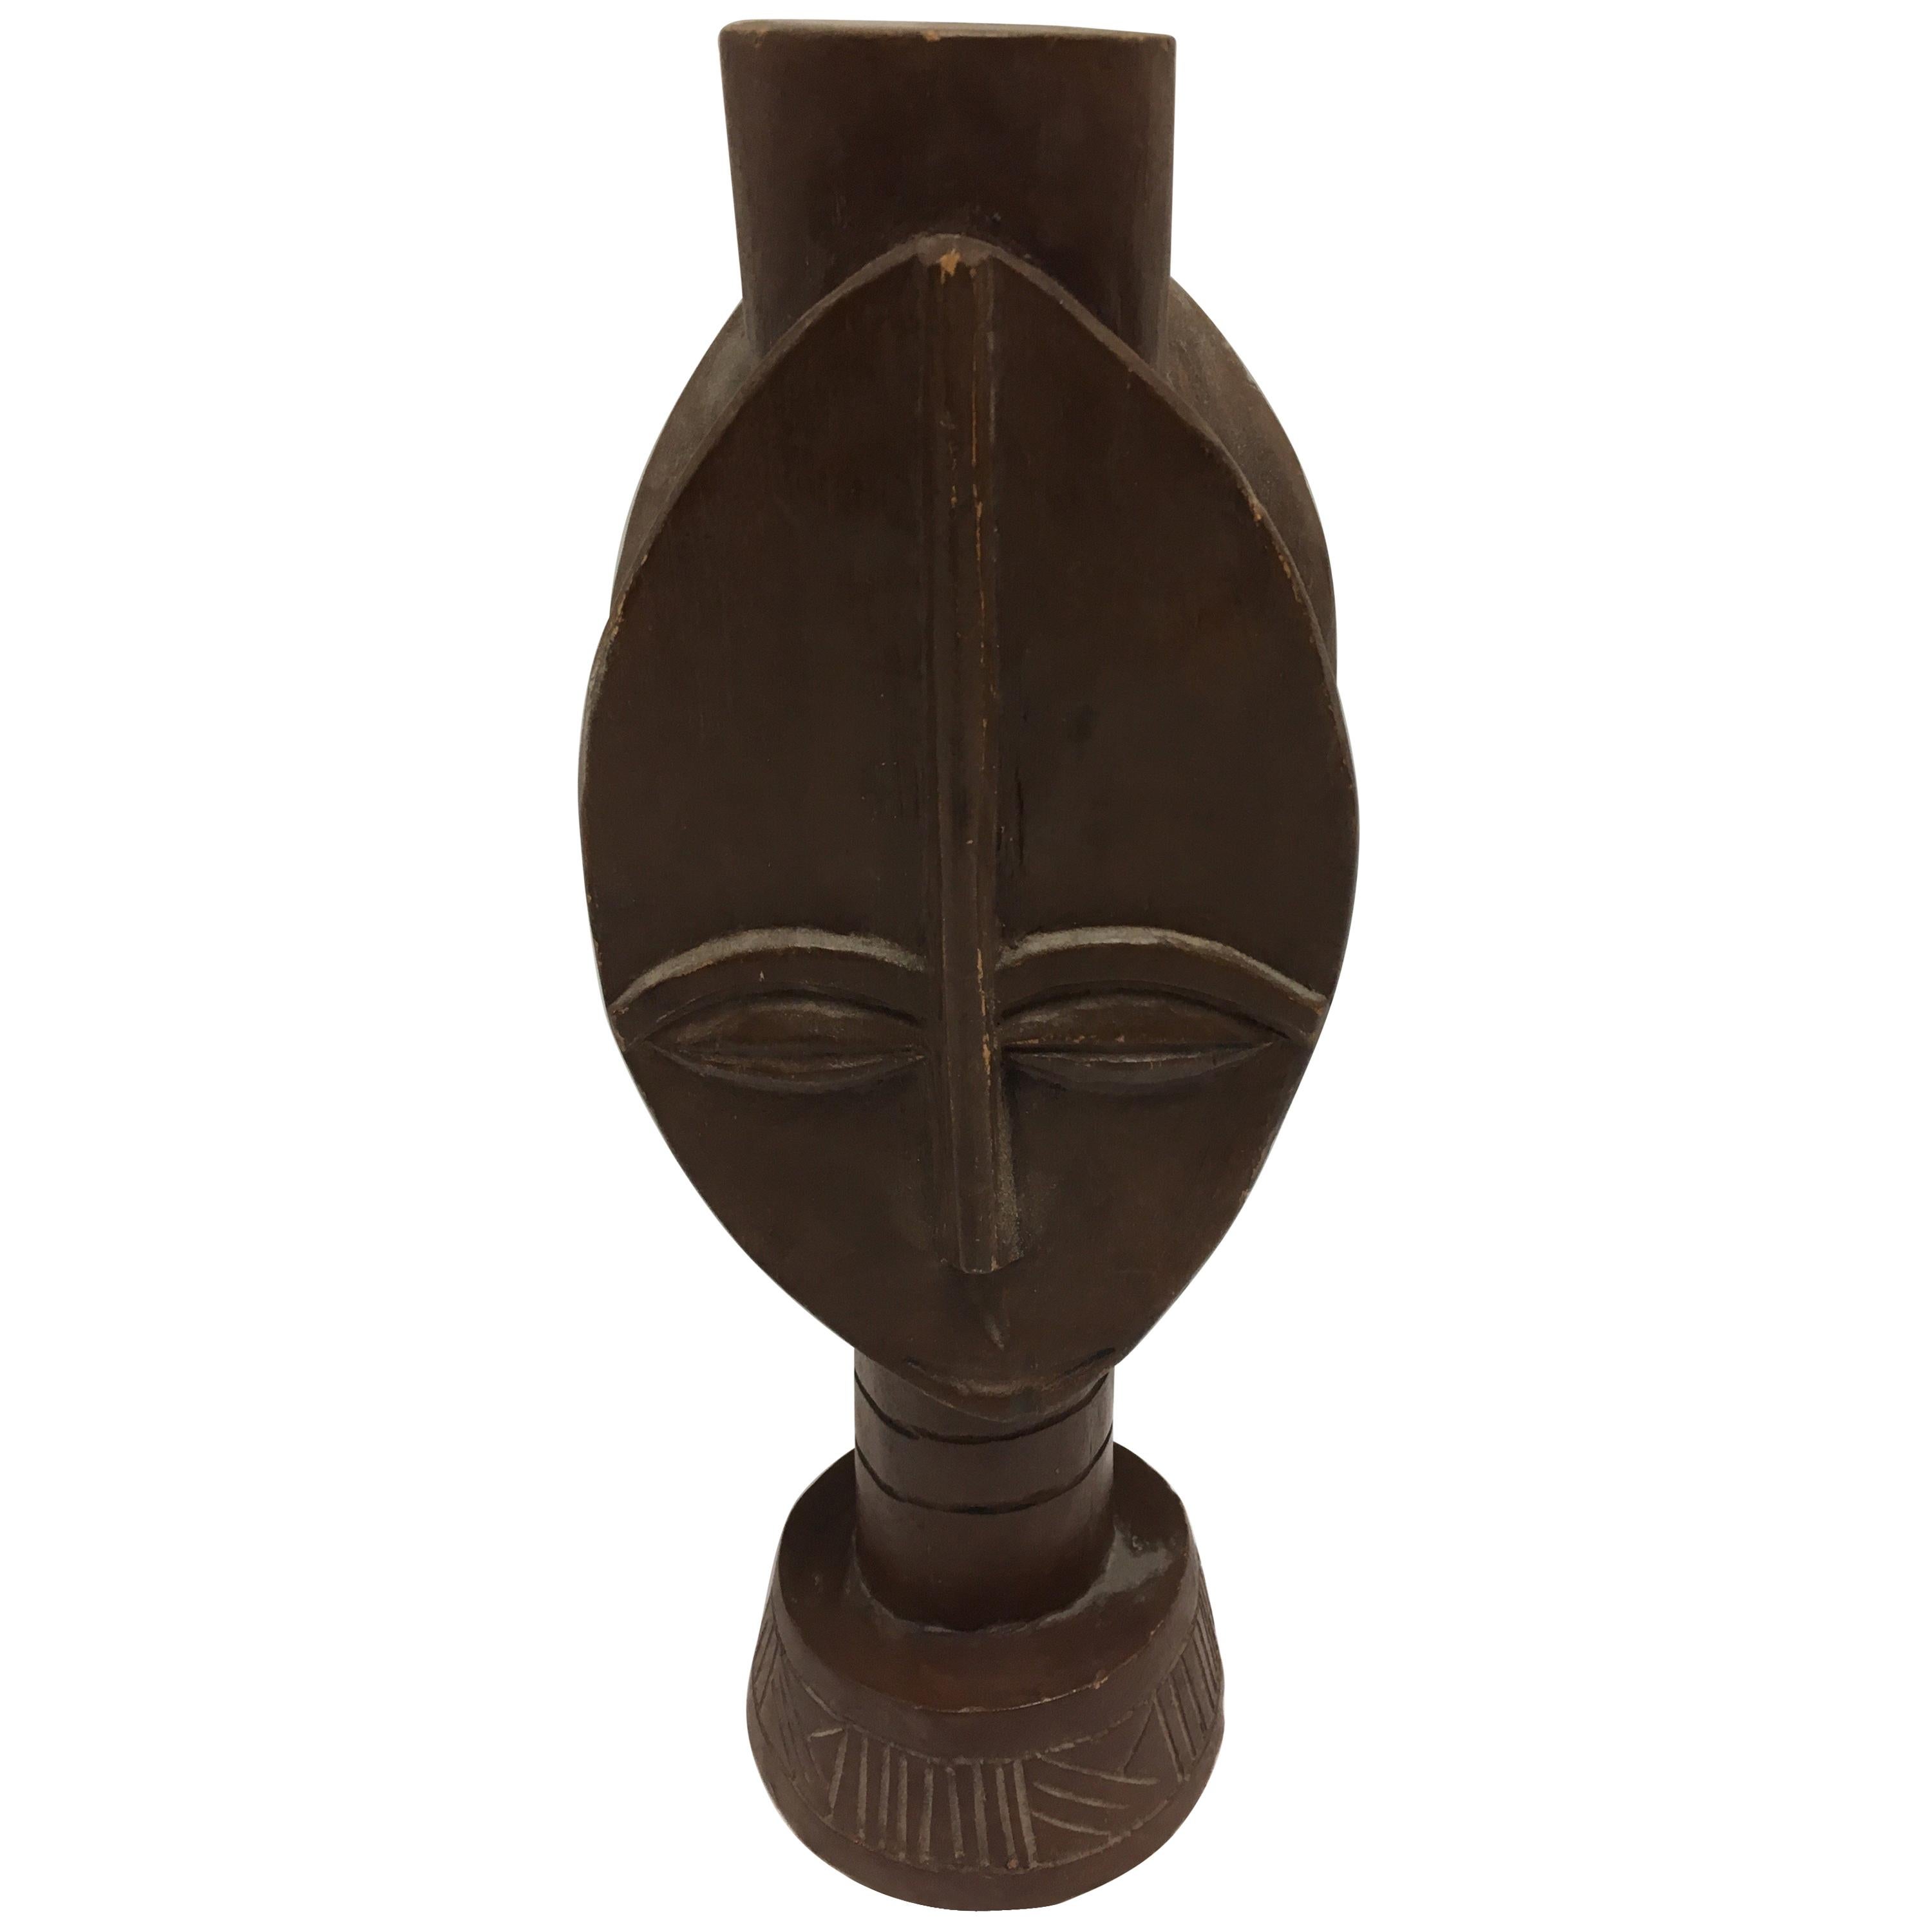 Decorative African Folk Art Mid-Century Modern Tribal Sculpture Art